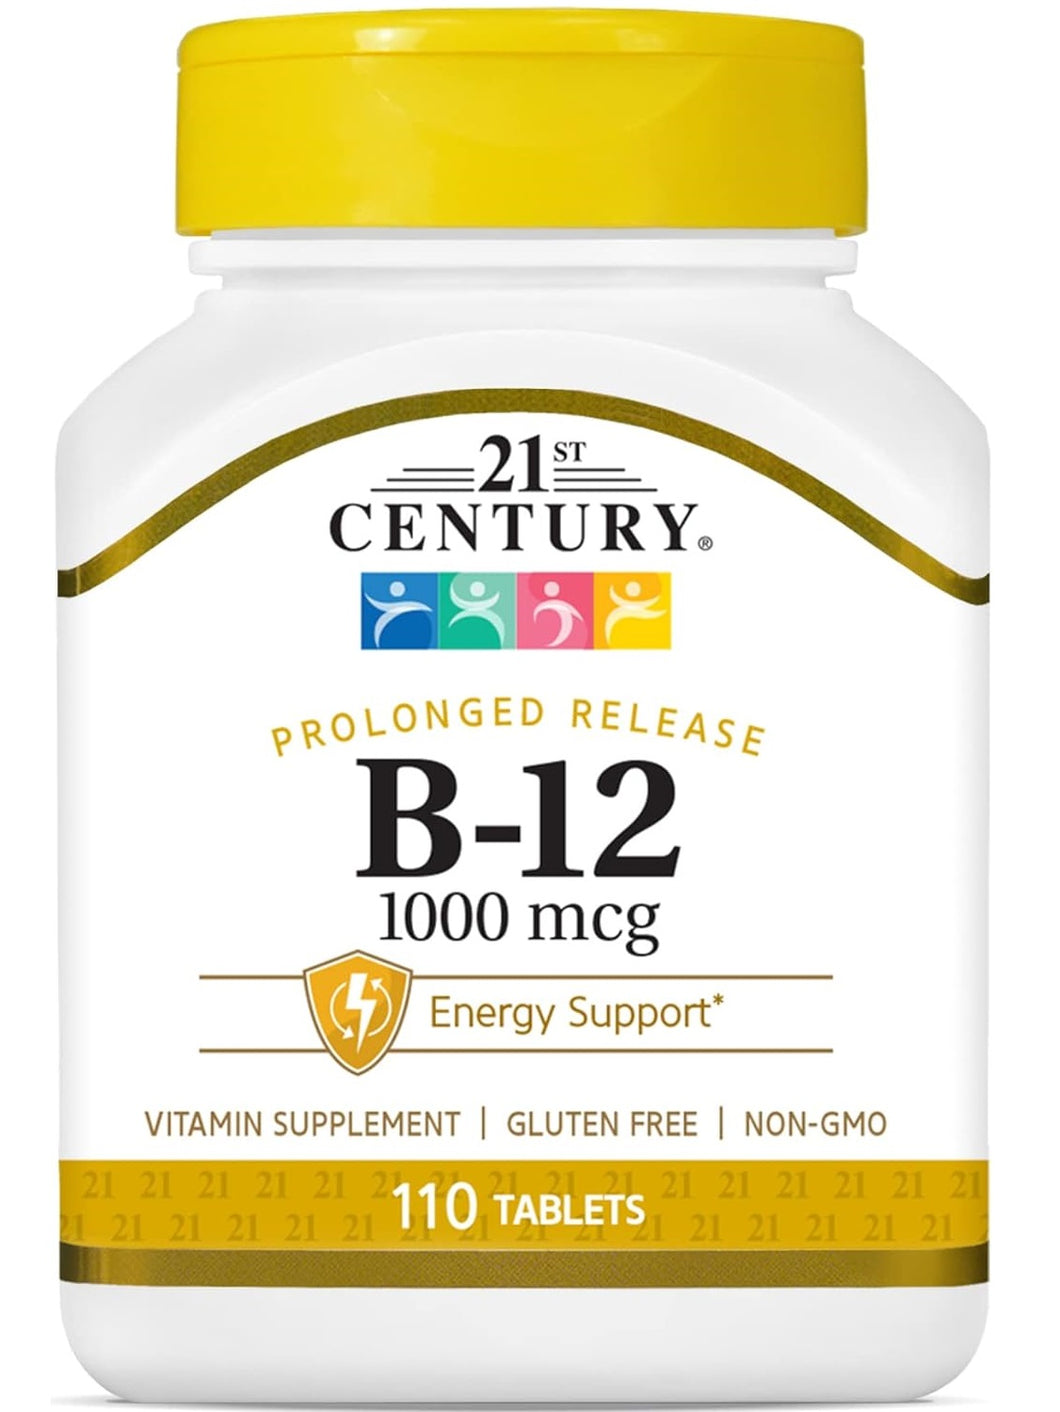 Vitamina B12, 1000 mcg, 21 Century, 110 tabletas